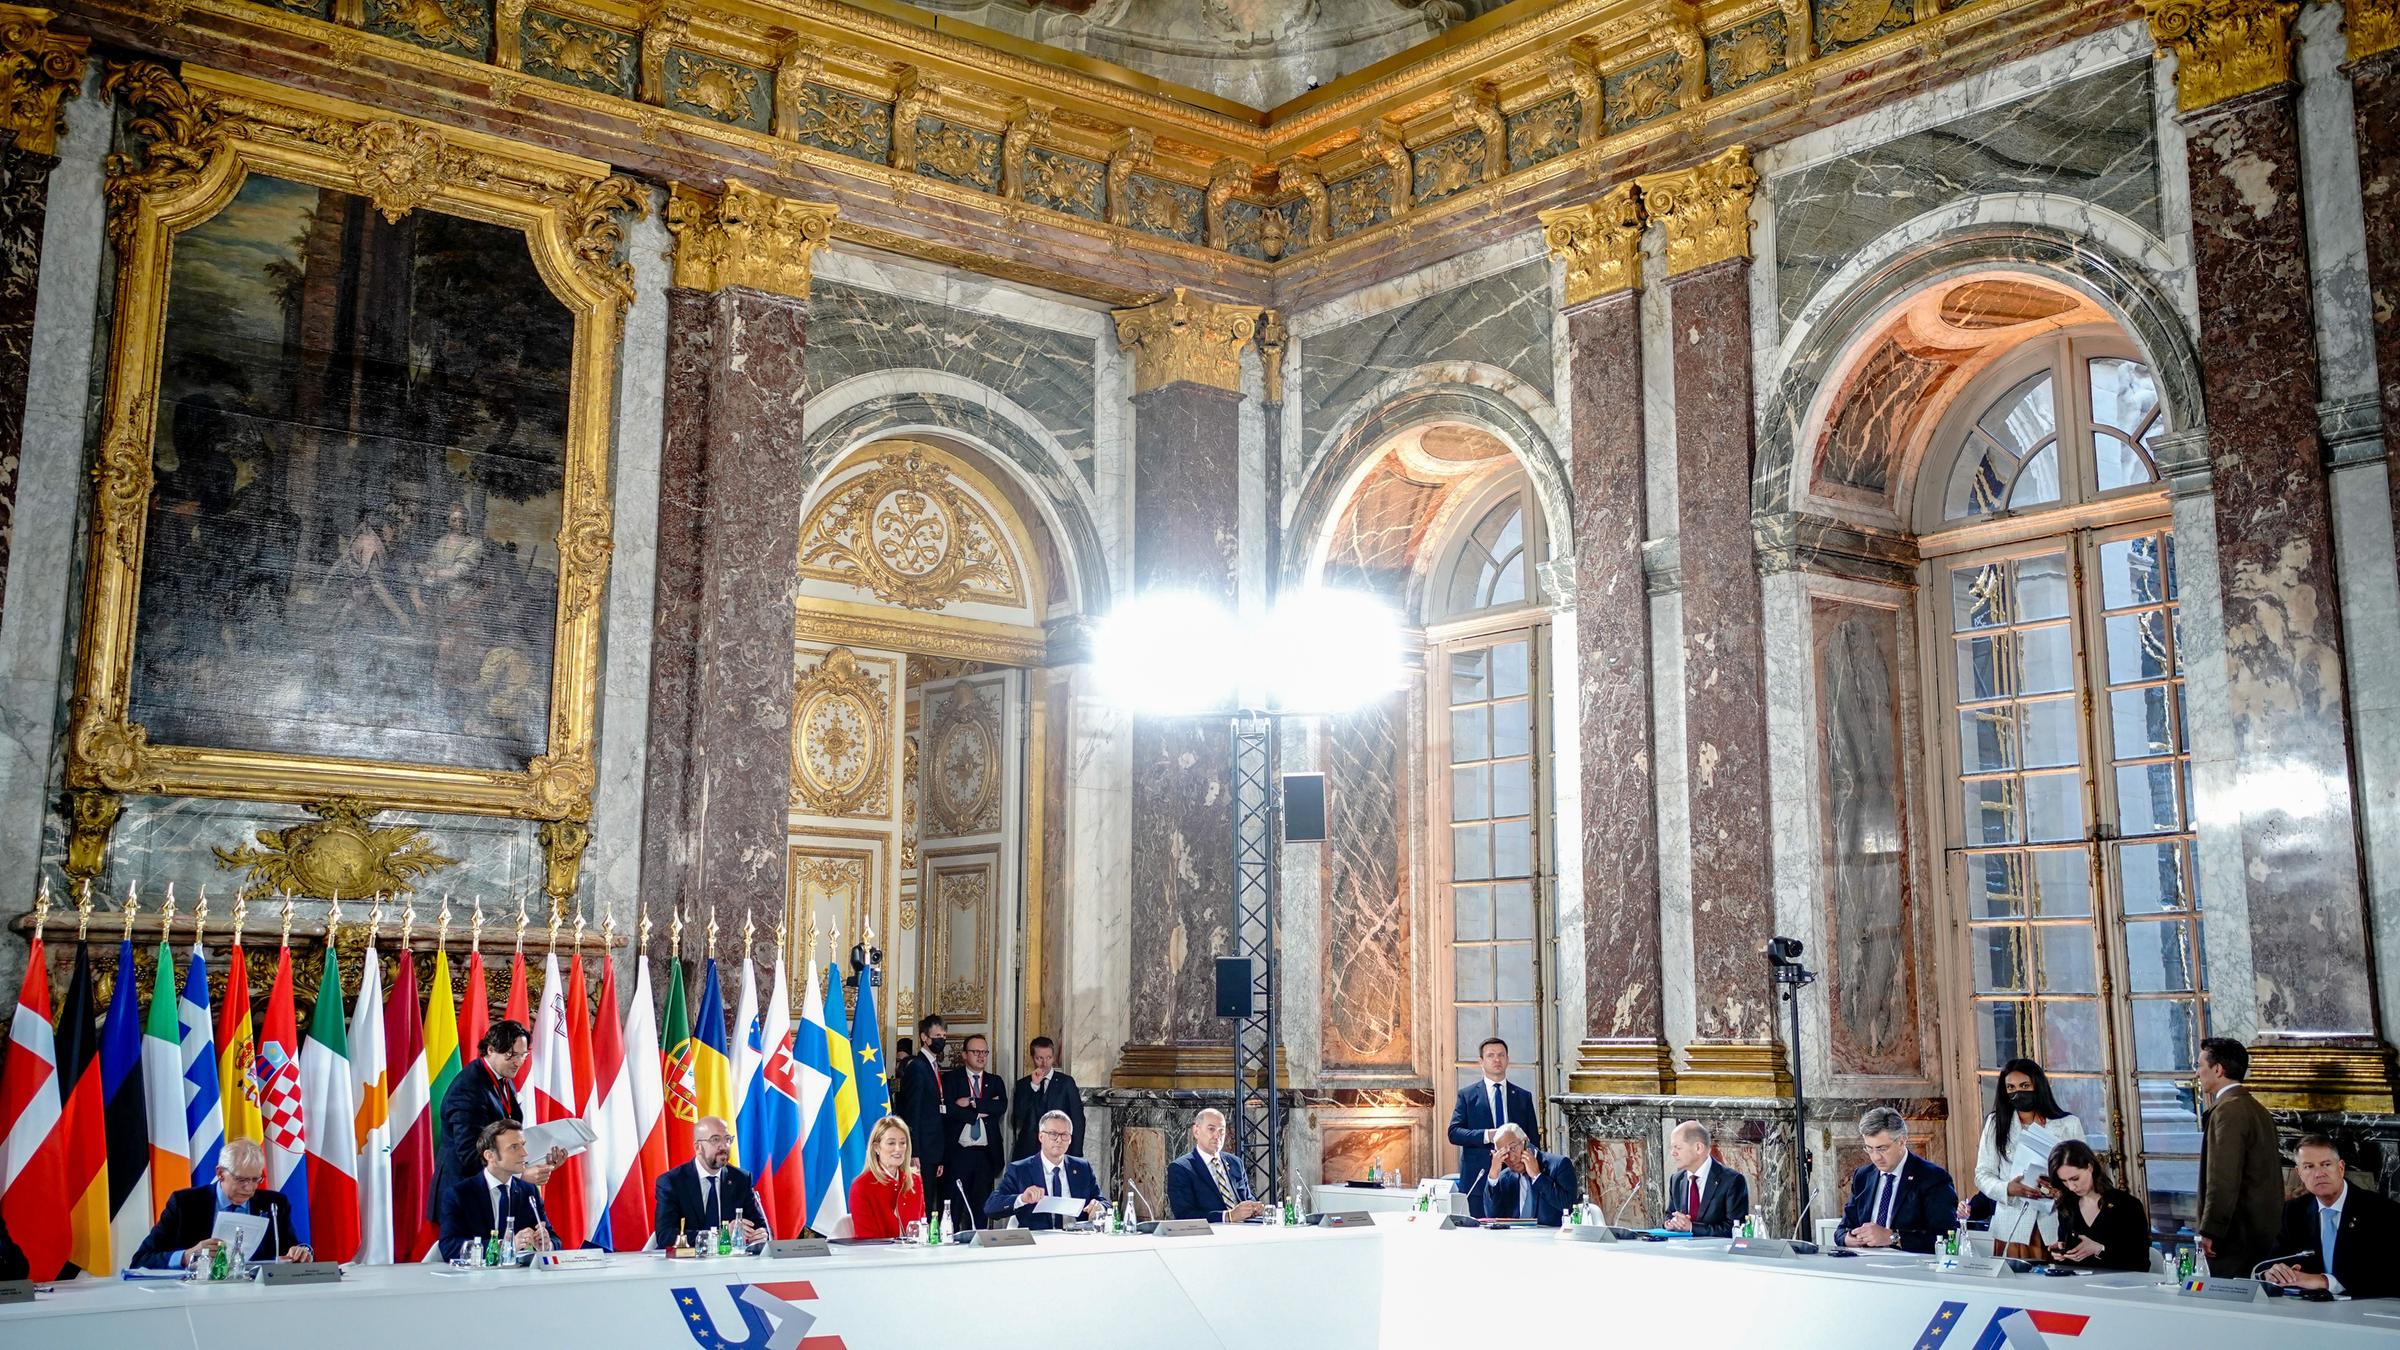 Frankreich, Versailles: Die Staats- und Regierungschefs der Europäischen Union EU kommen im Schloss von Versailles bei einer informellen zweitägigen Tagung zur ersten Arbeitssitzung zusammen.